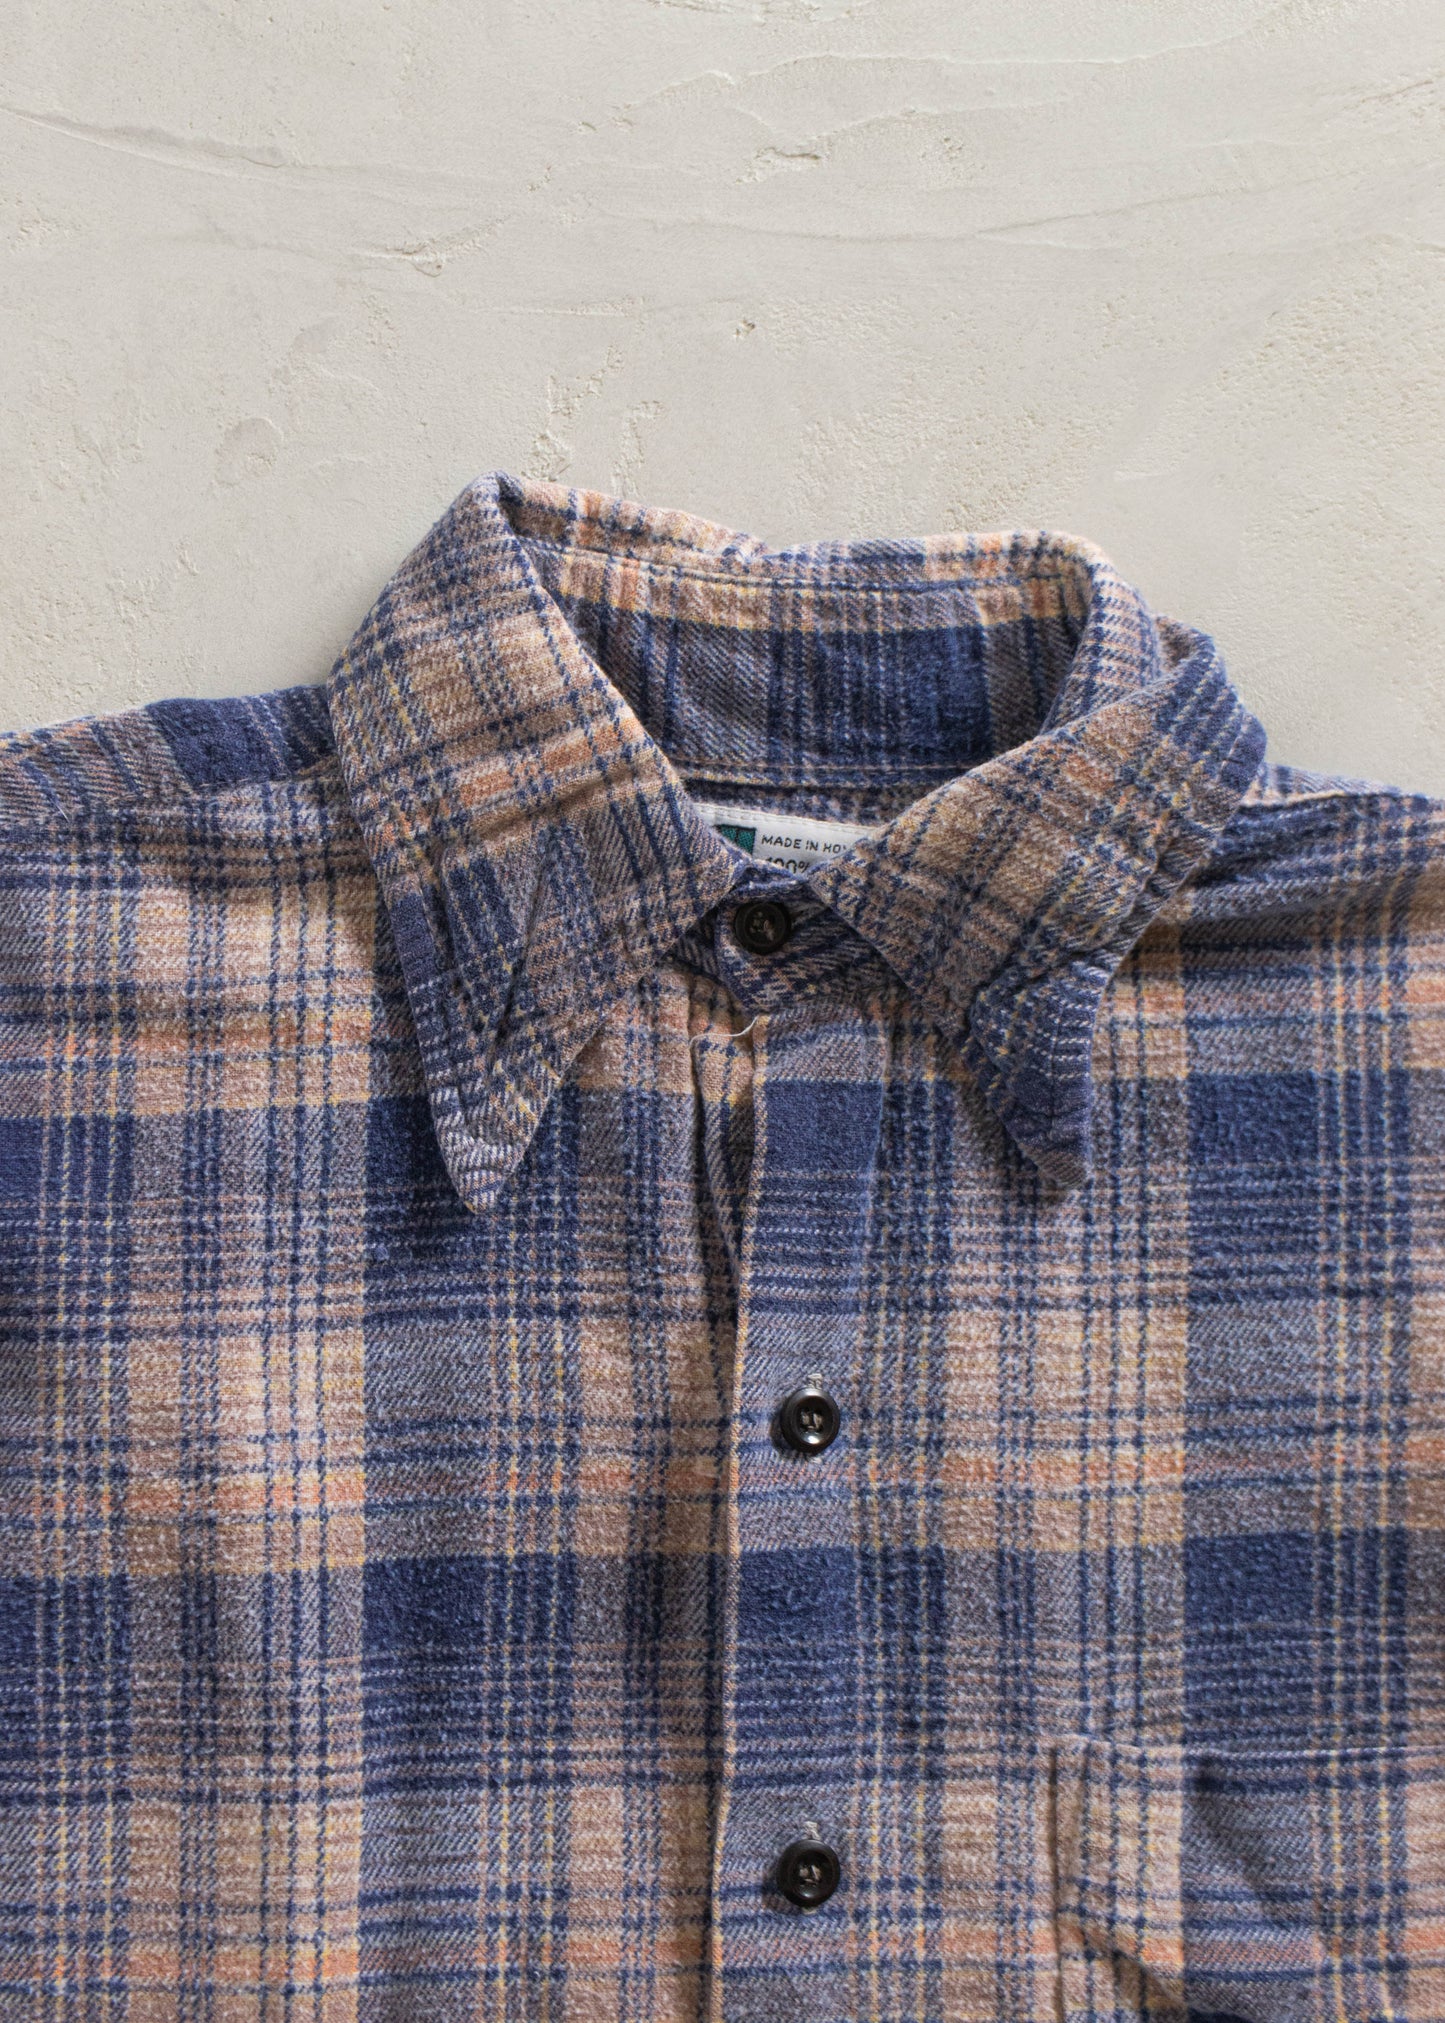 Vintage 1990s Cotton Flannel Button Up Shirt Size XS/S